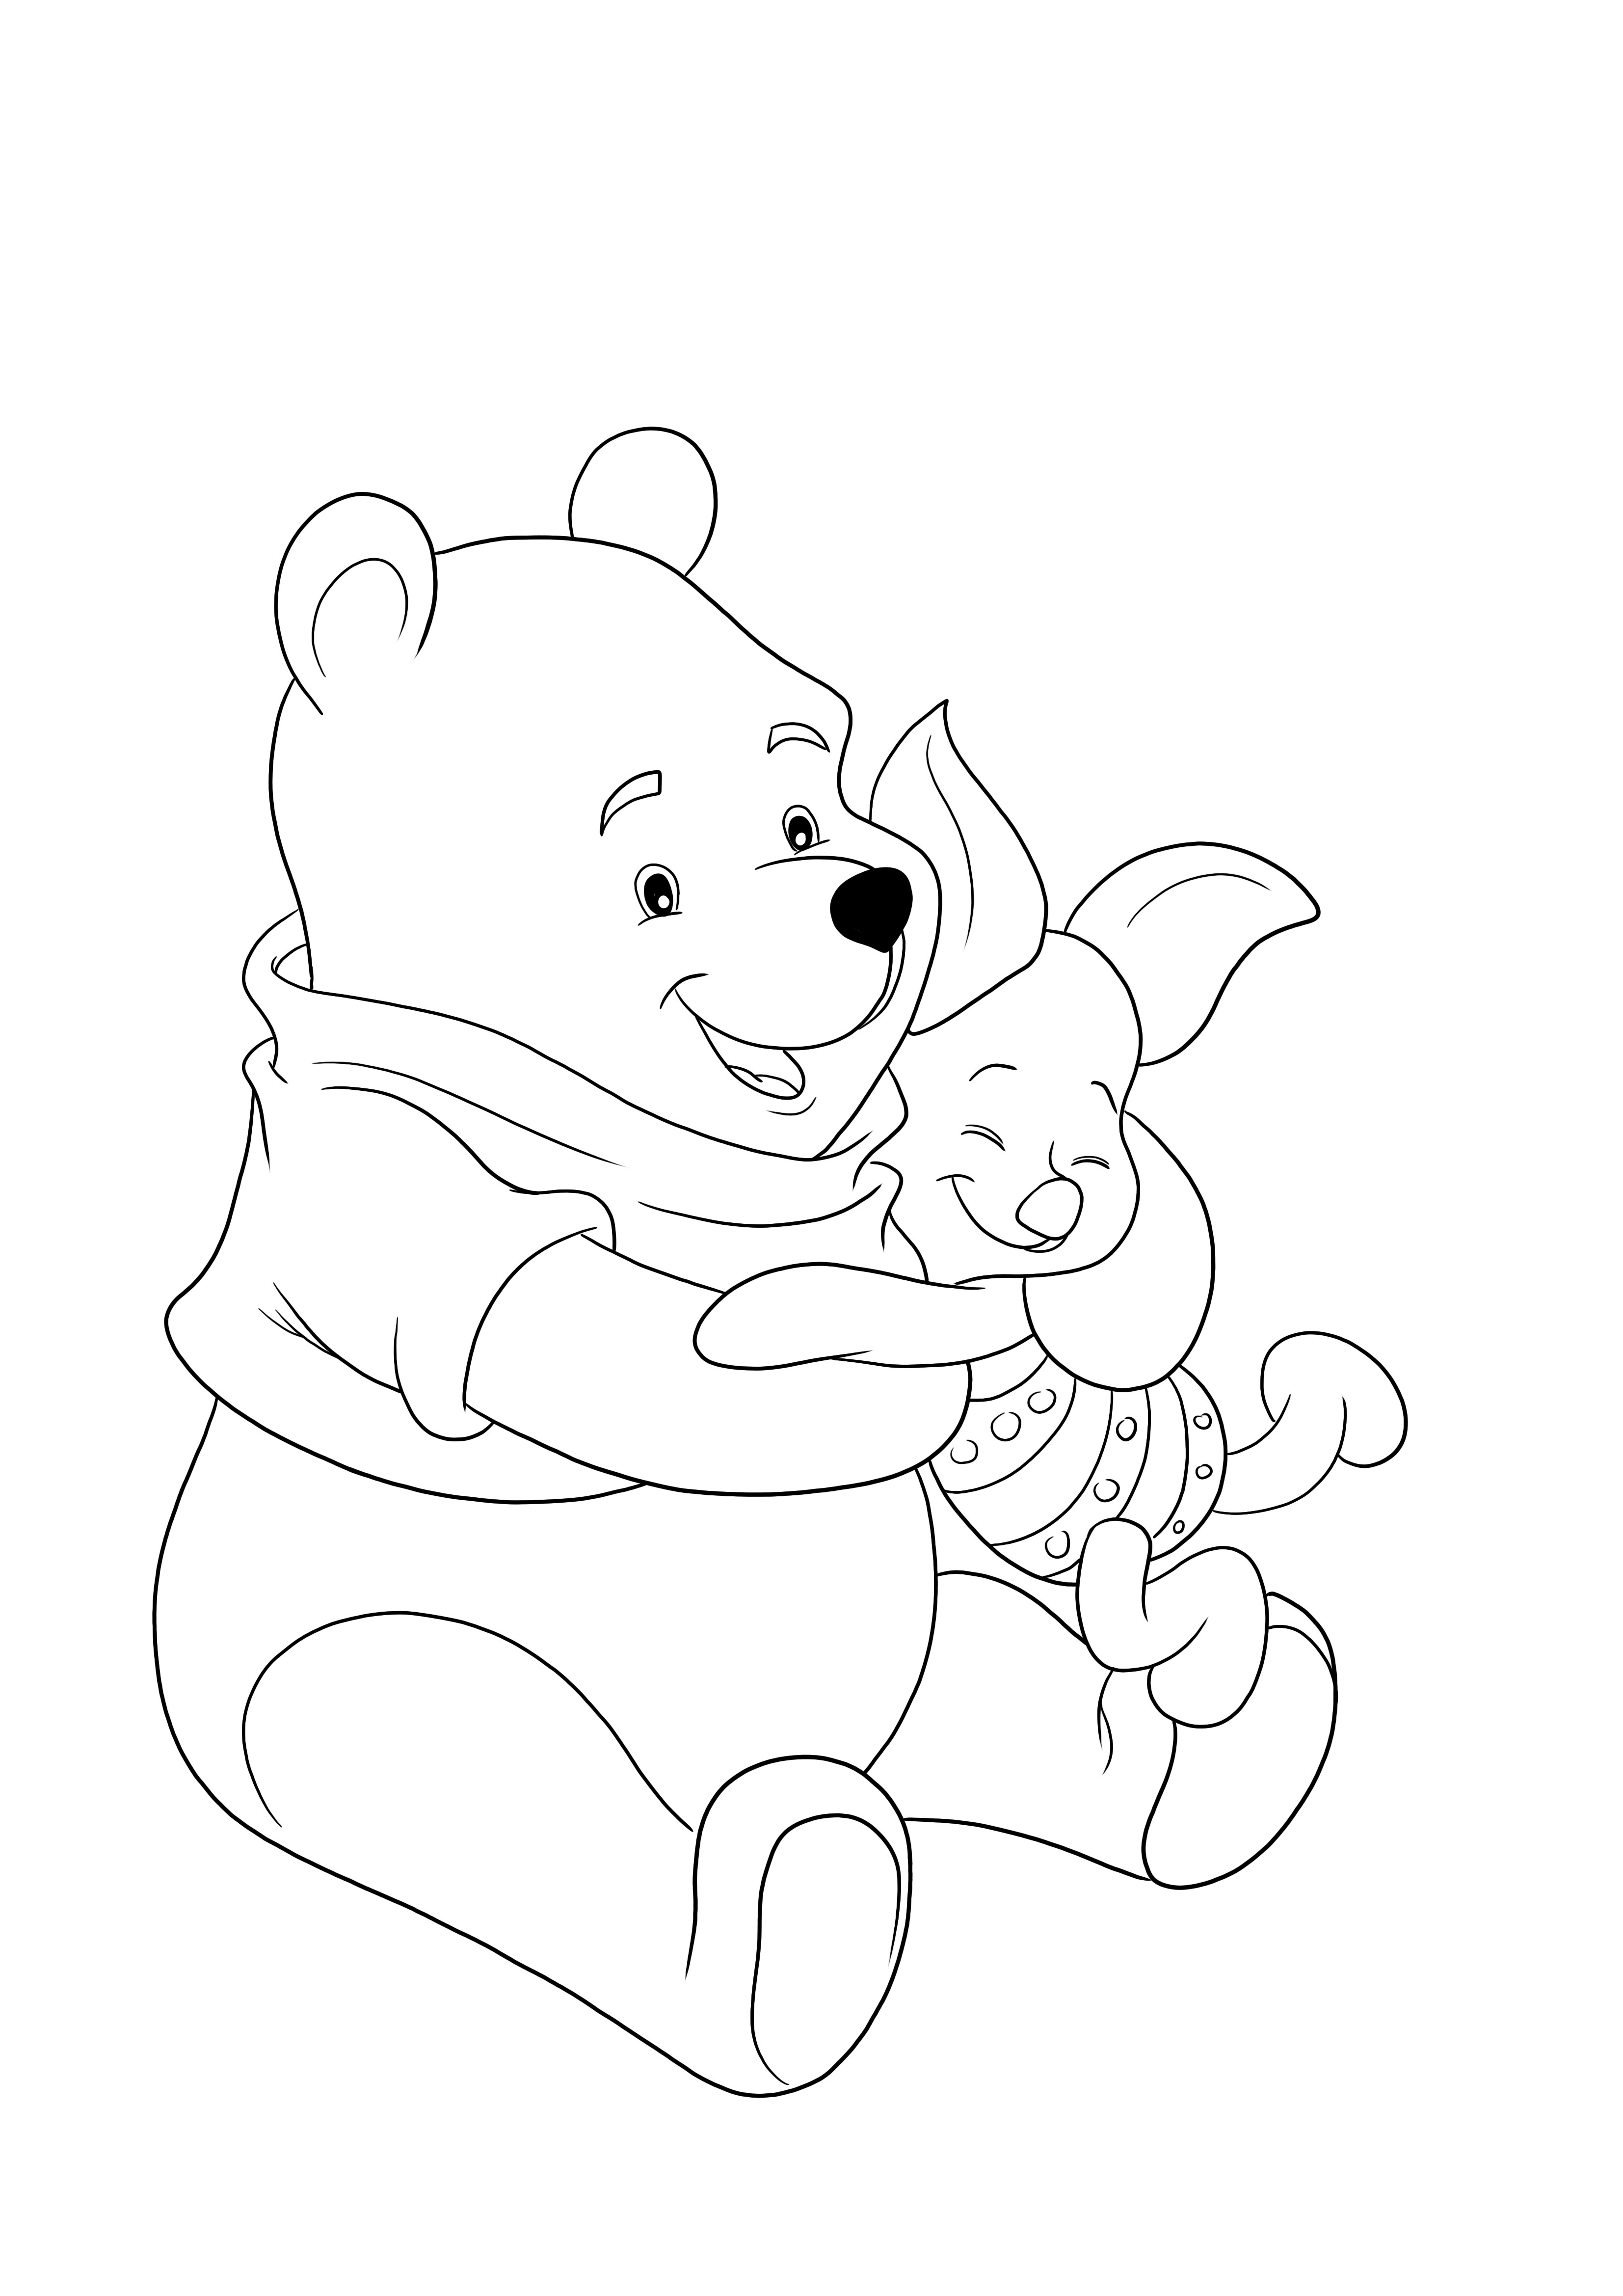 Dibujo para colorear de Winnie y Piglet abrazándose gratis para imprimir o descargar